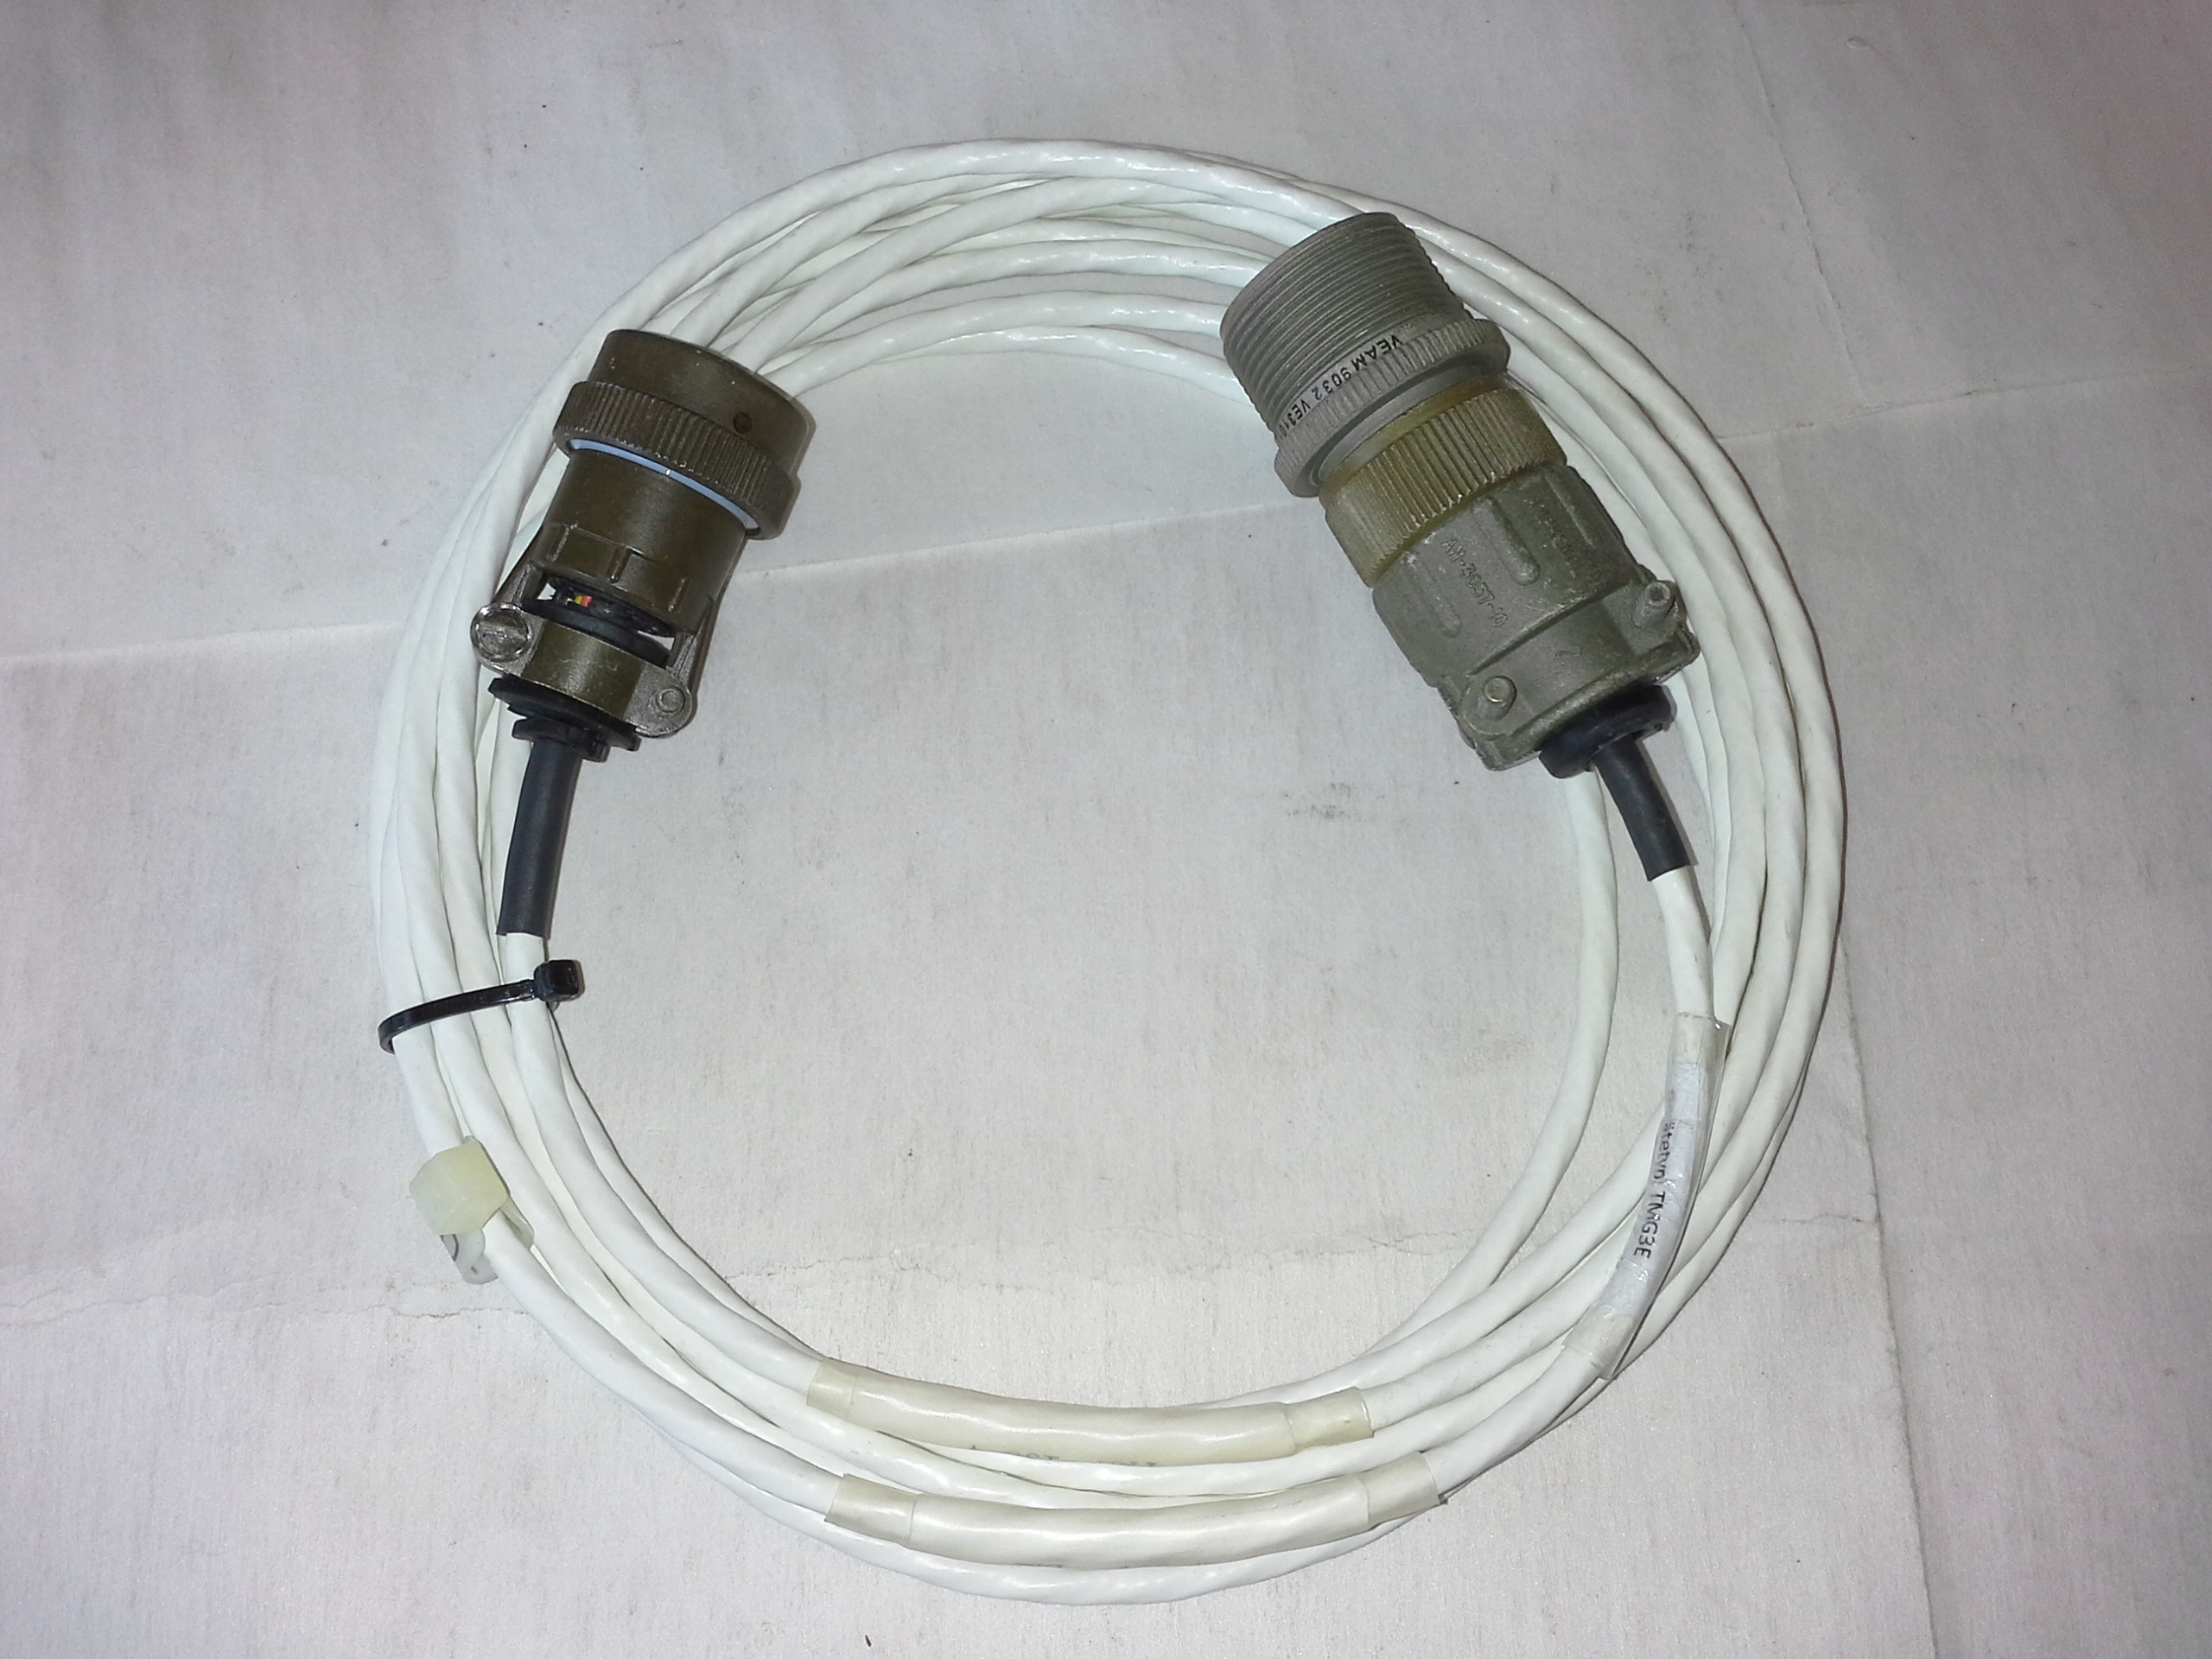 PKL 136-4 Kabel für Thermoelementmessung mit Ausgleichsleitung